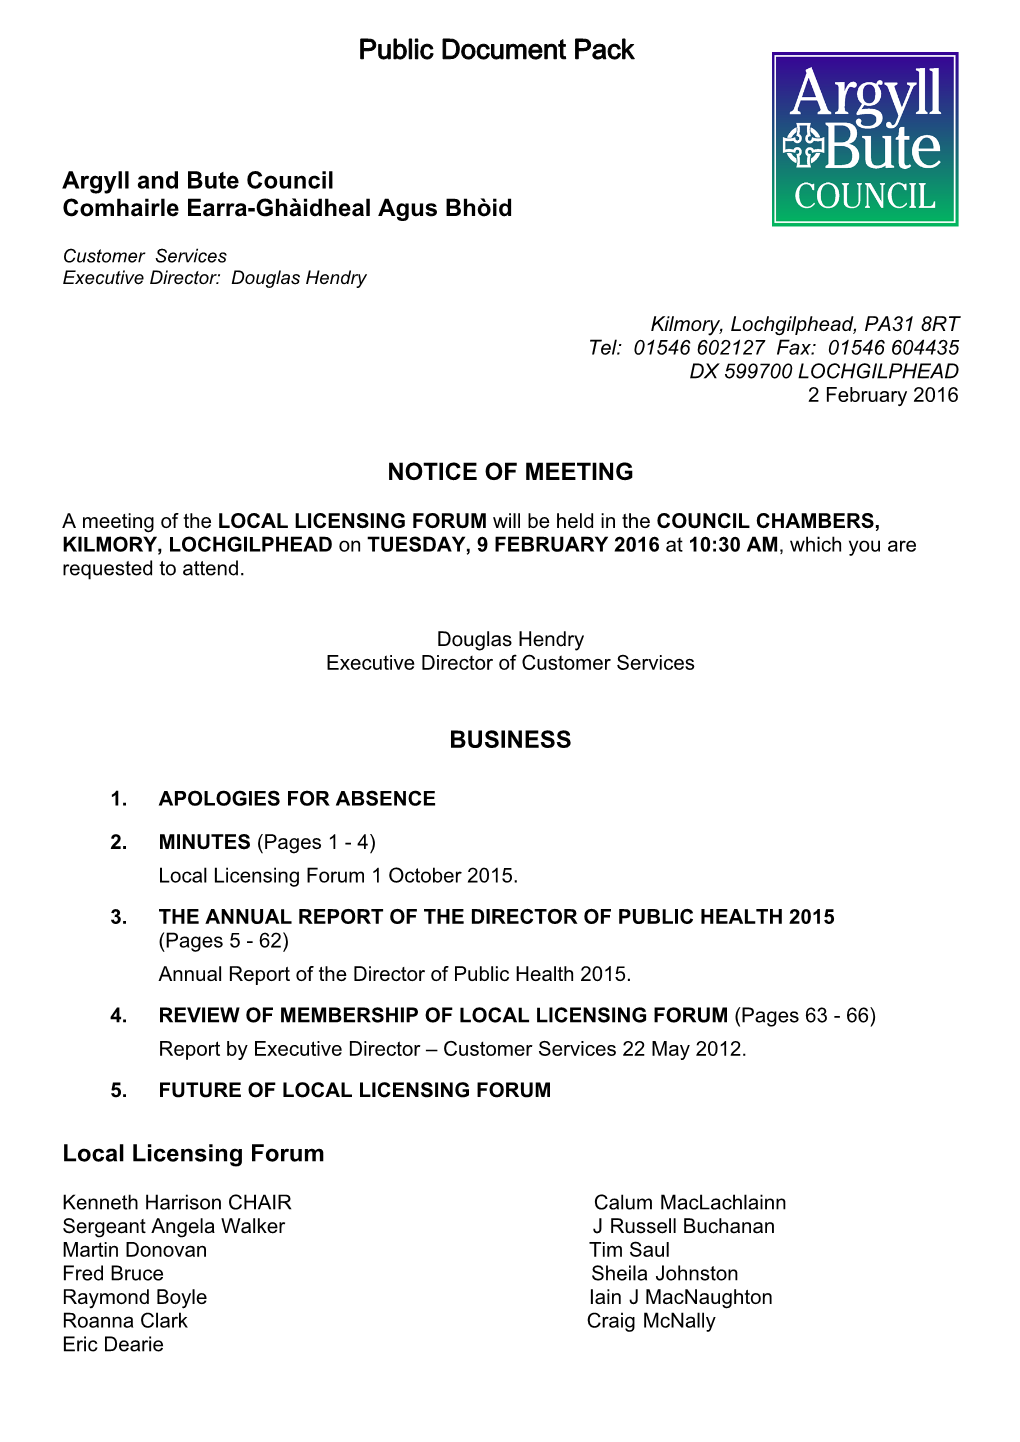 (Public Pack)Agenda Document for Local Licensing Forum, 09/02/2016